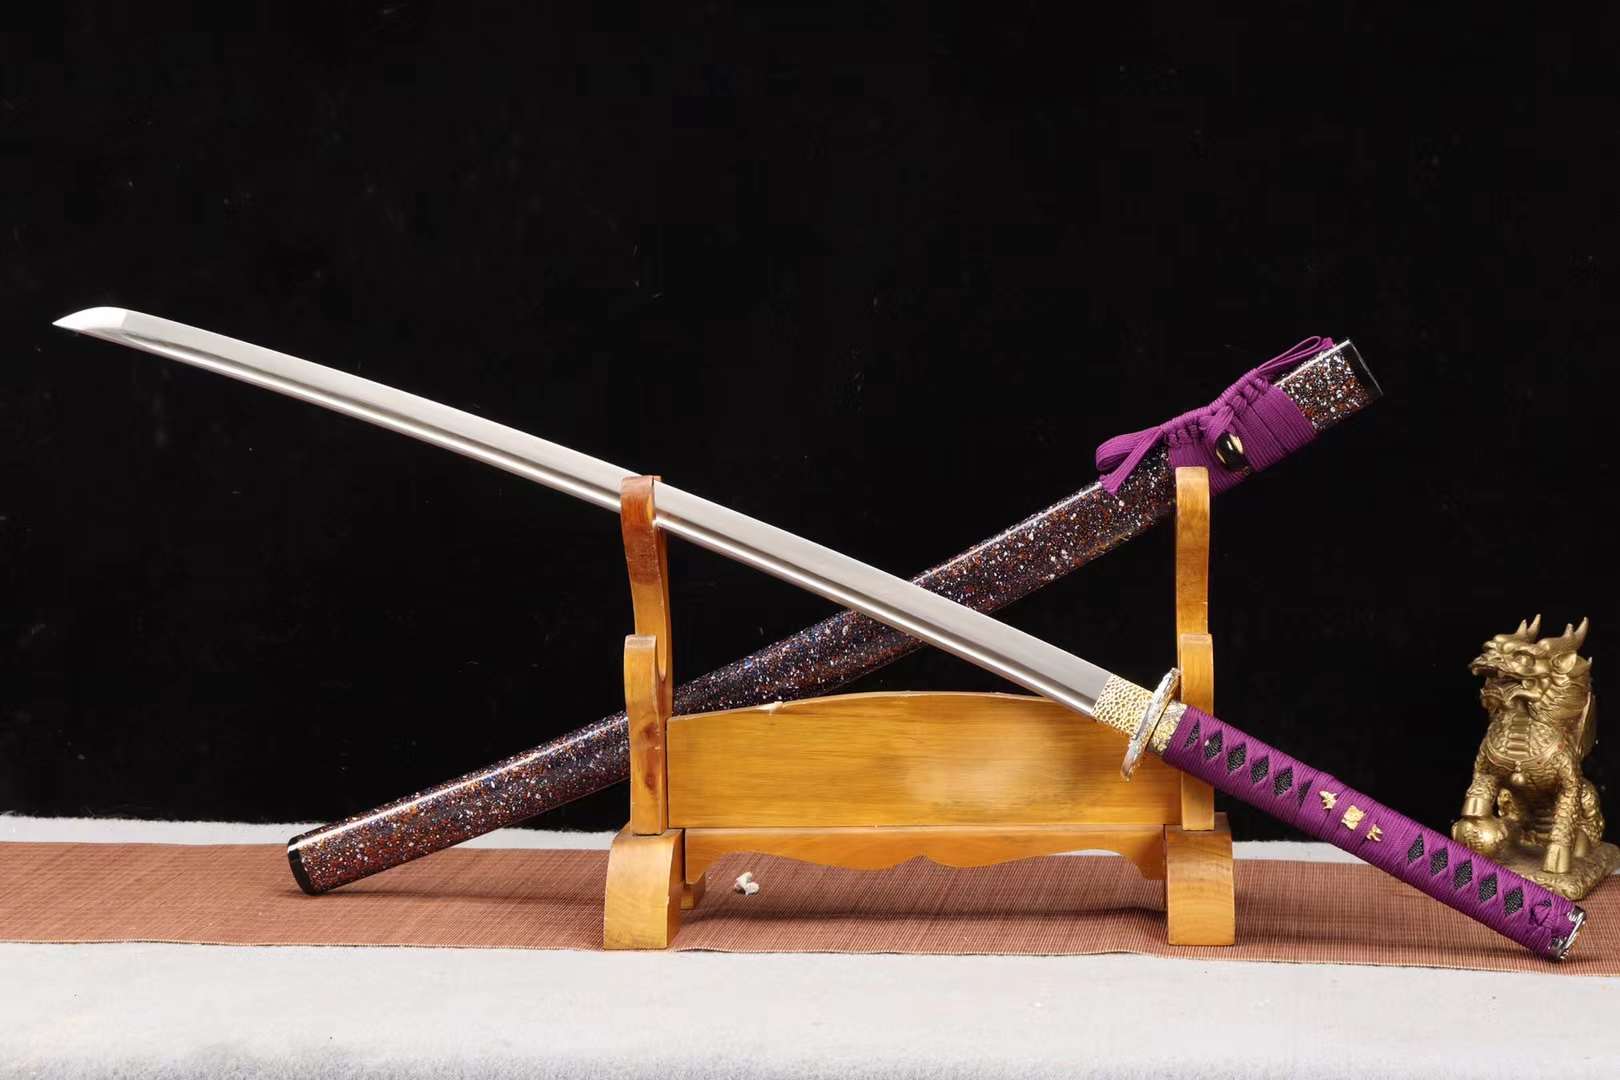 handmade samurai sword,1090 steel sword set,sword steel katana sword,samurai sword purple loveyitadj